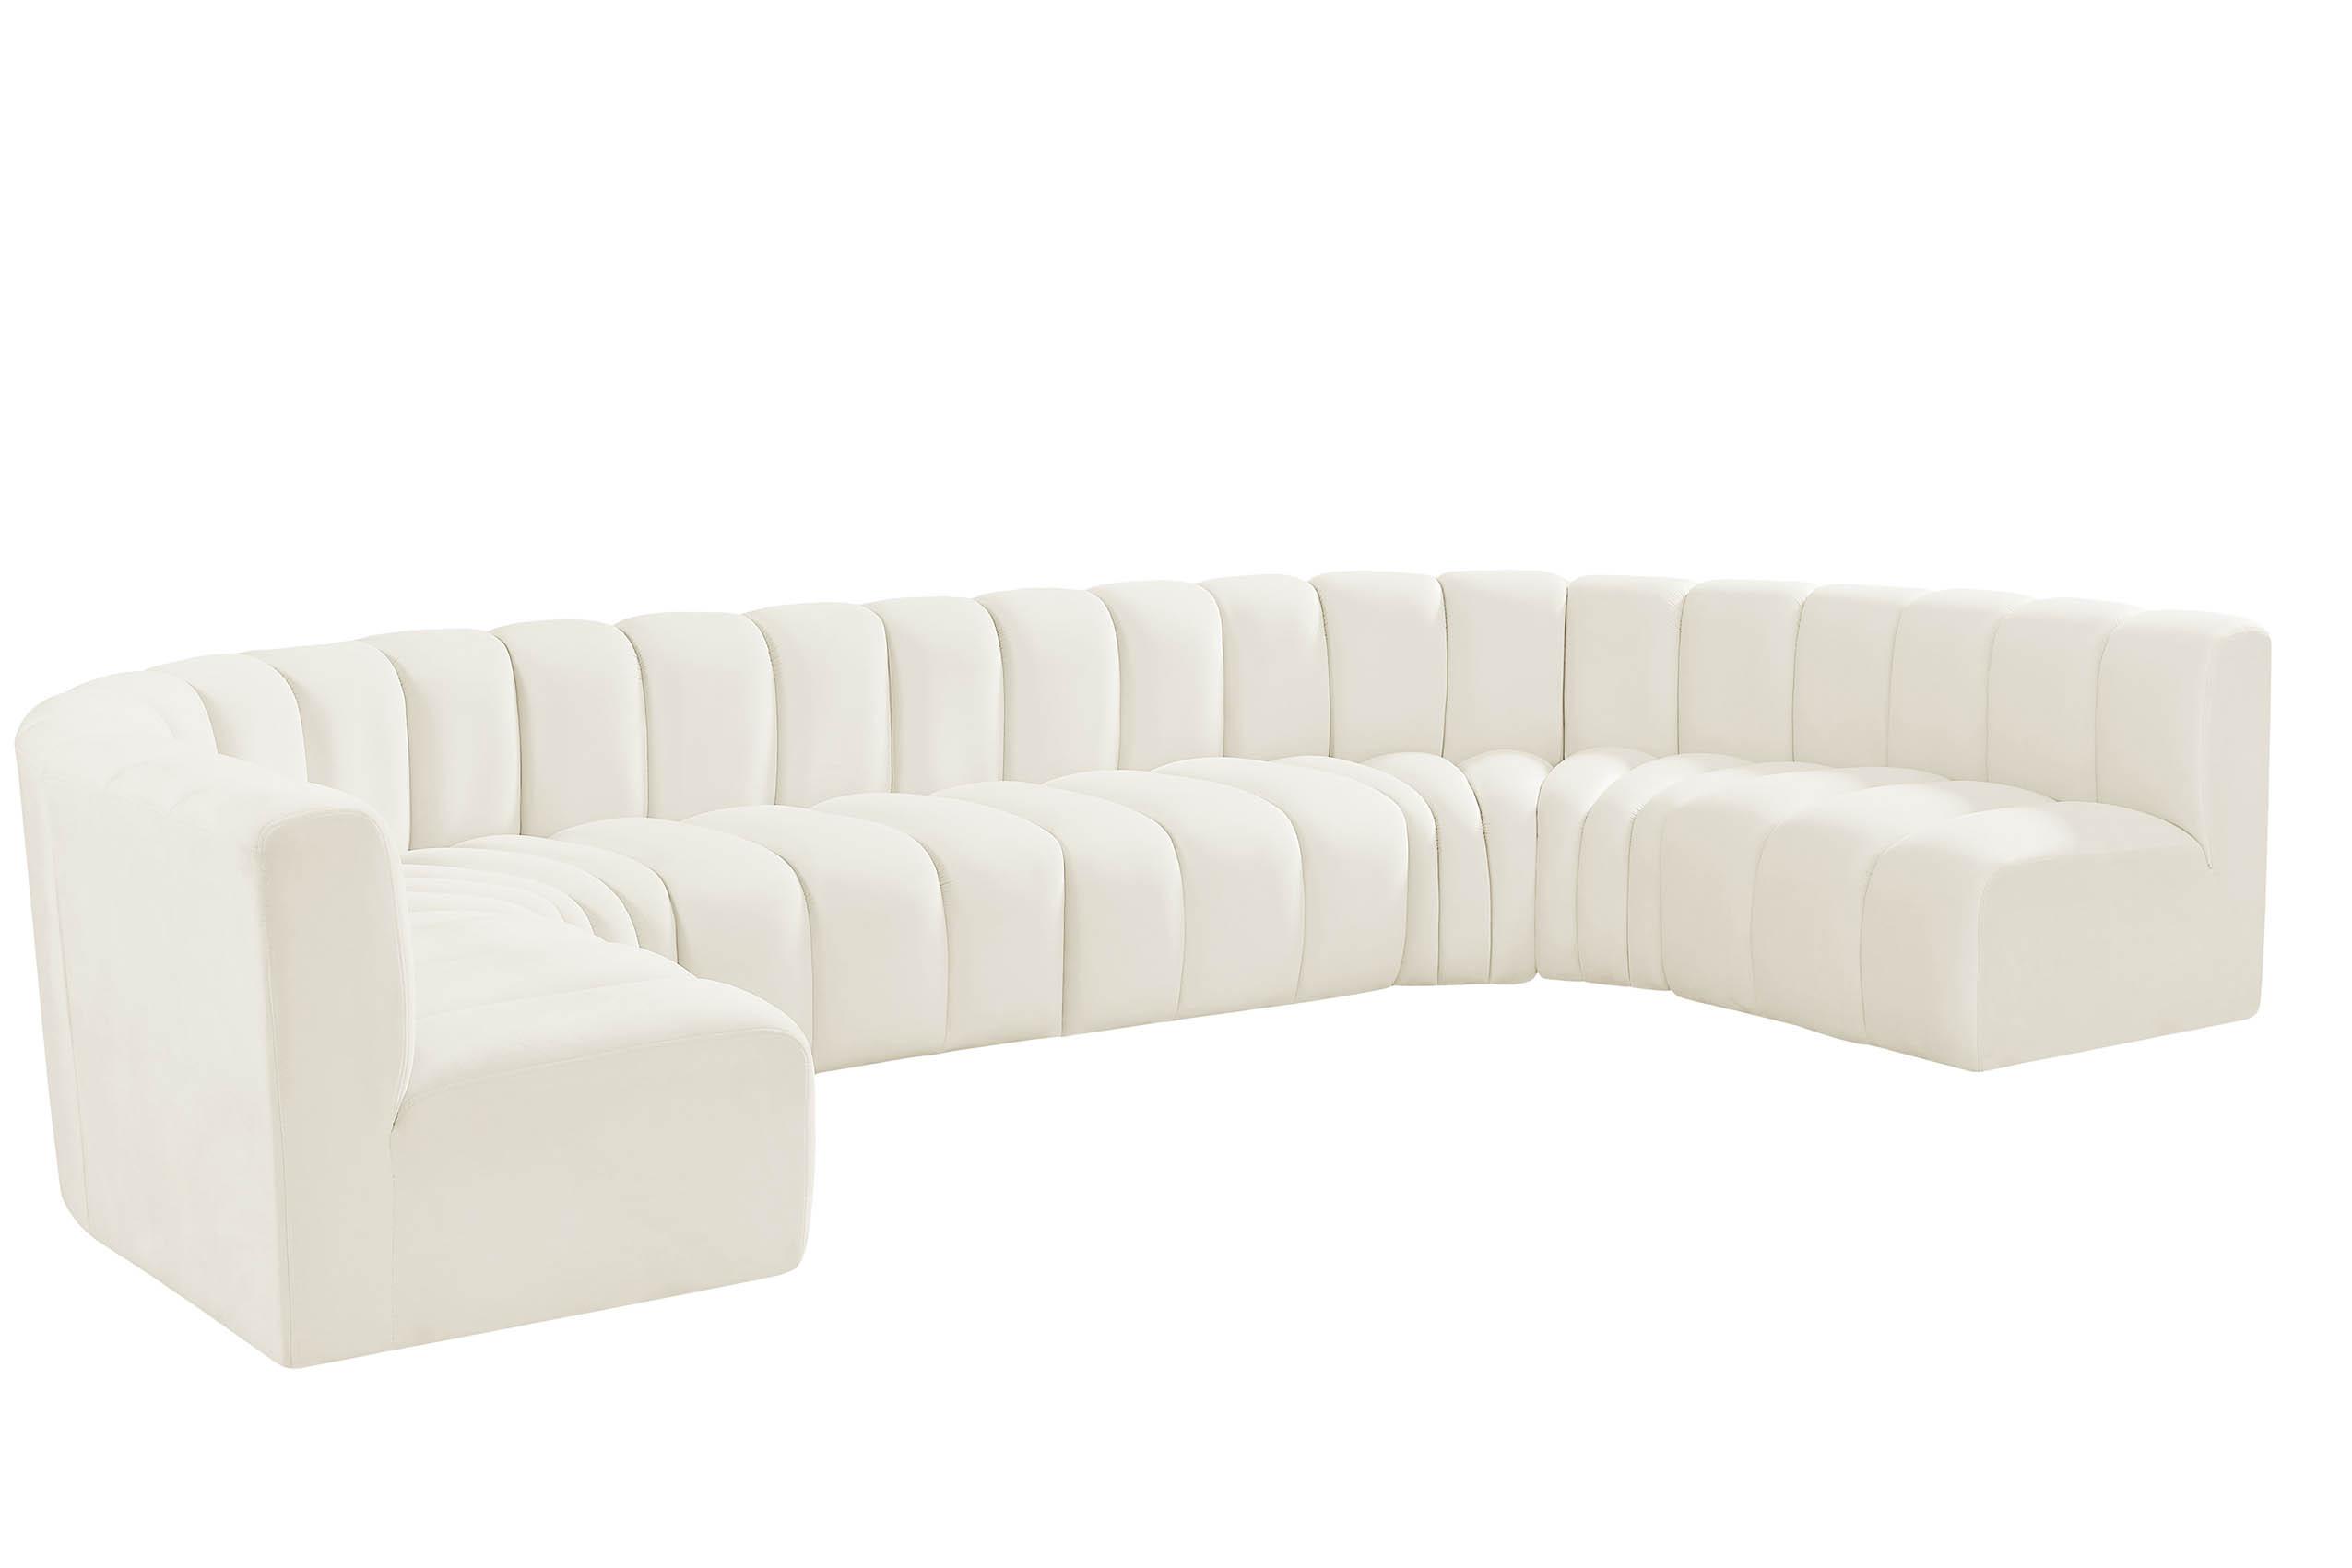 Contemporary, Modern Modular Sectional Sofa ARC 103Cream-S8A 103Cream-S8A in Cream Velvet